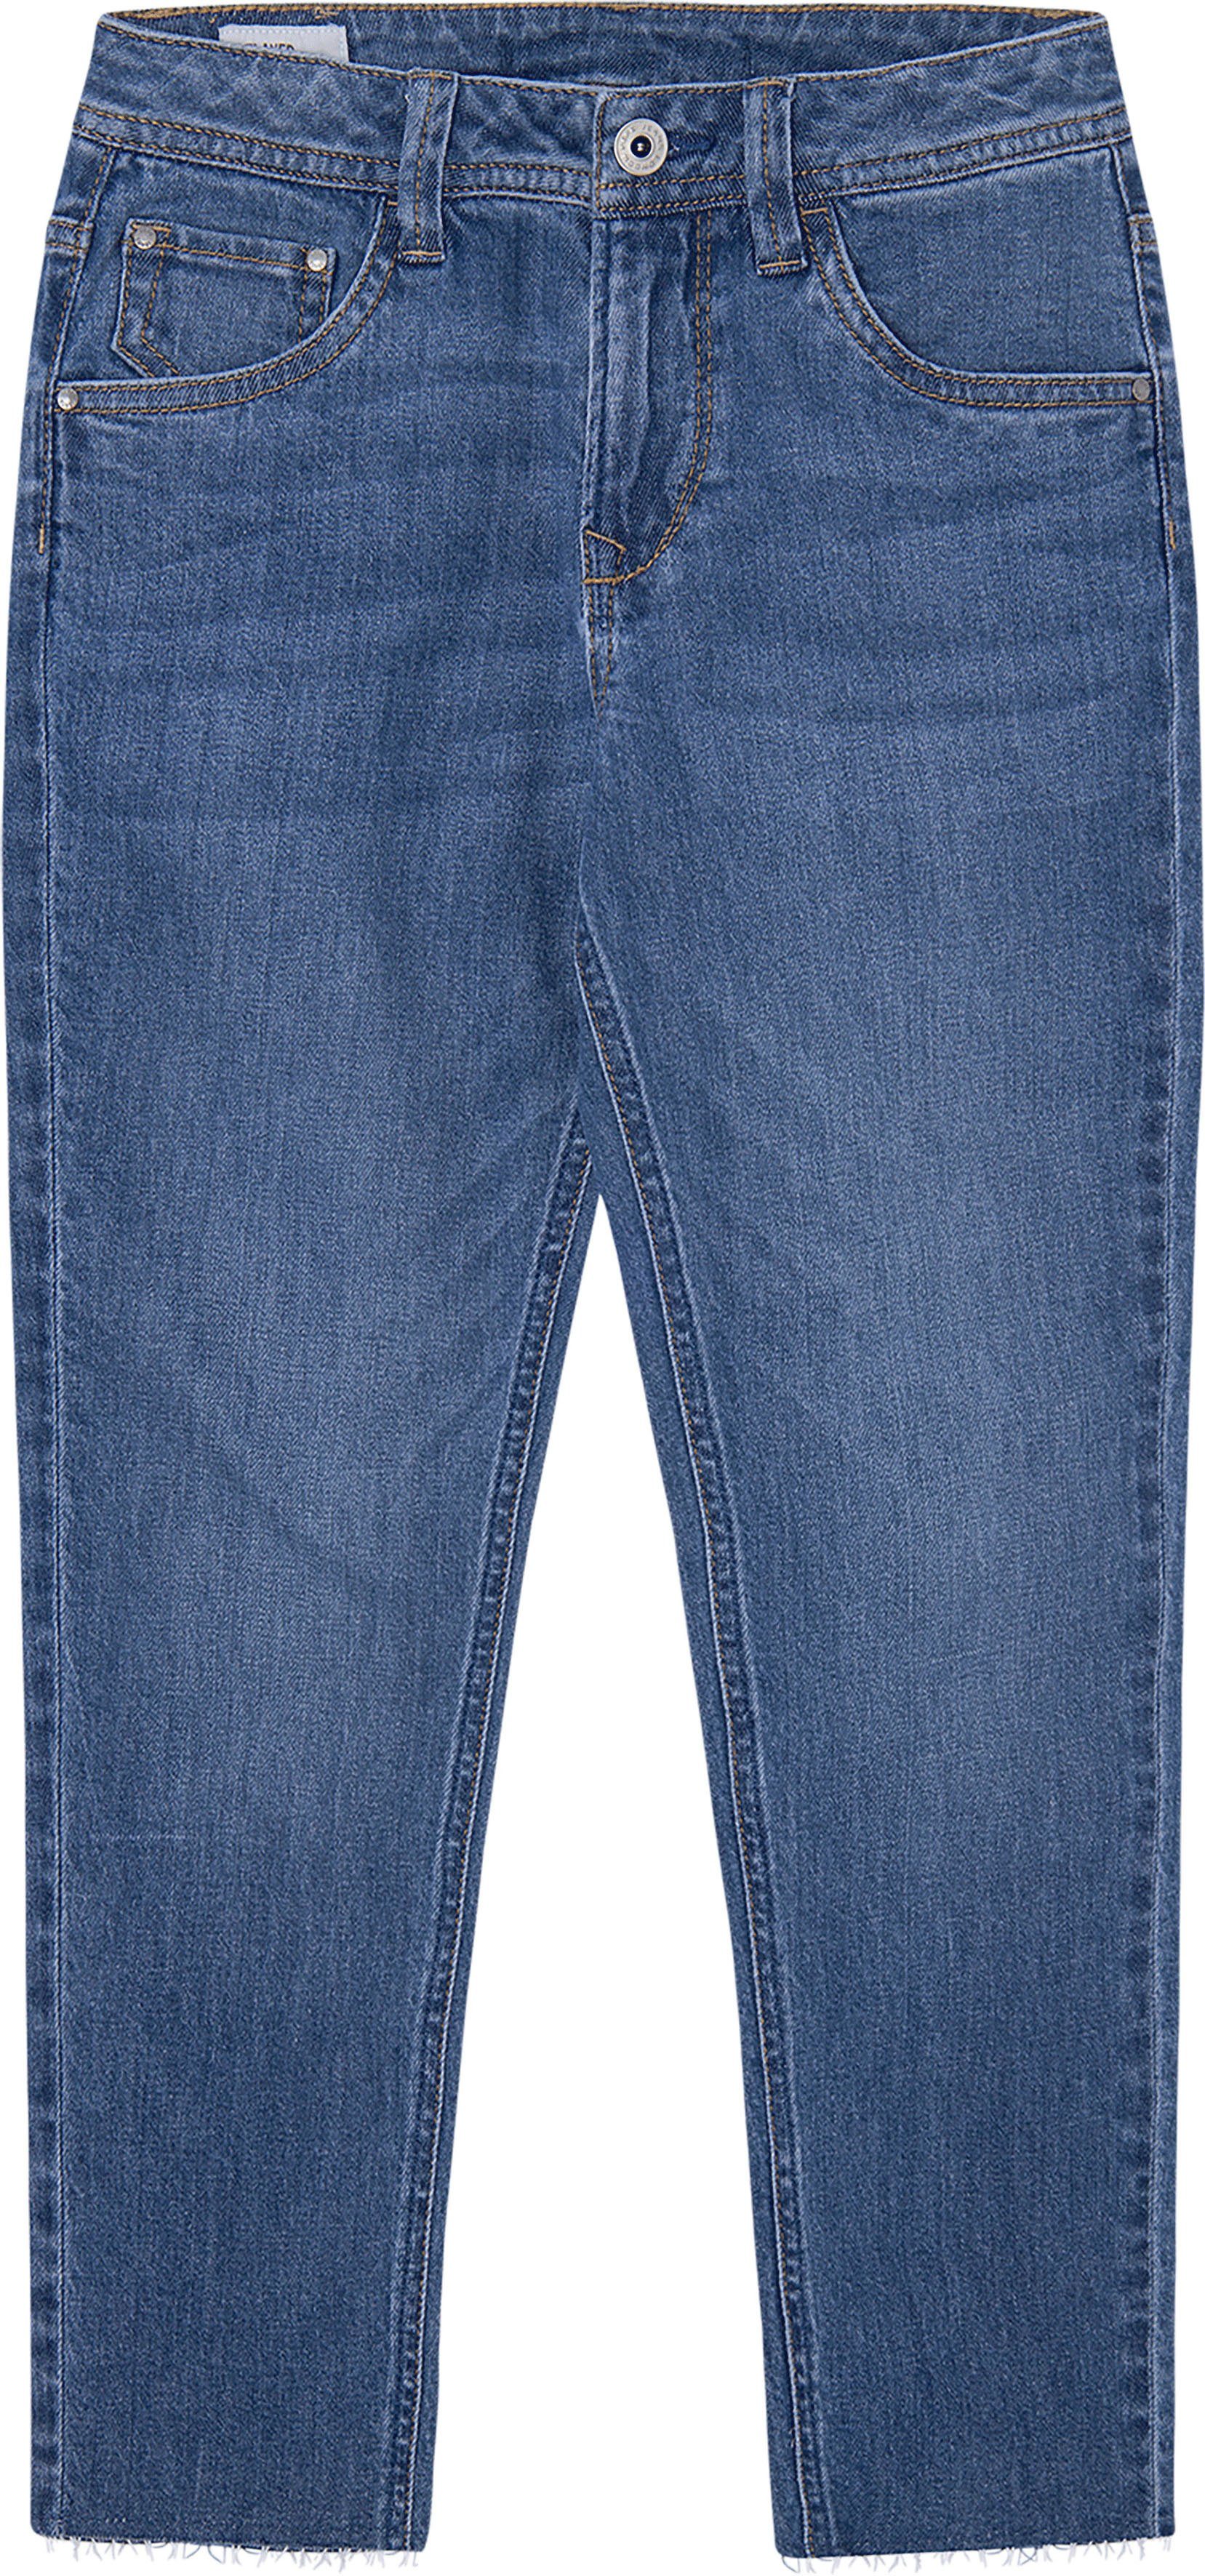 Mädchen 7/8-Jeans online kaufen | OTTO